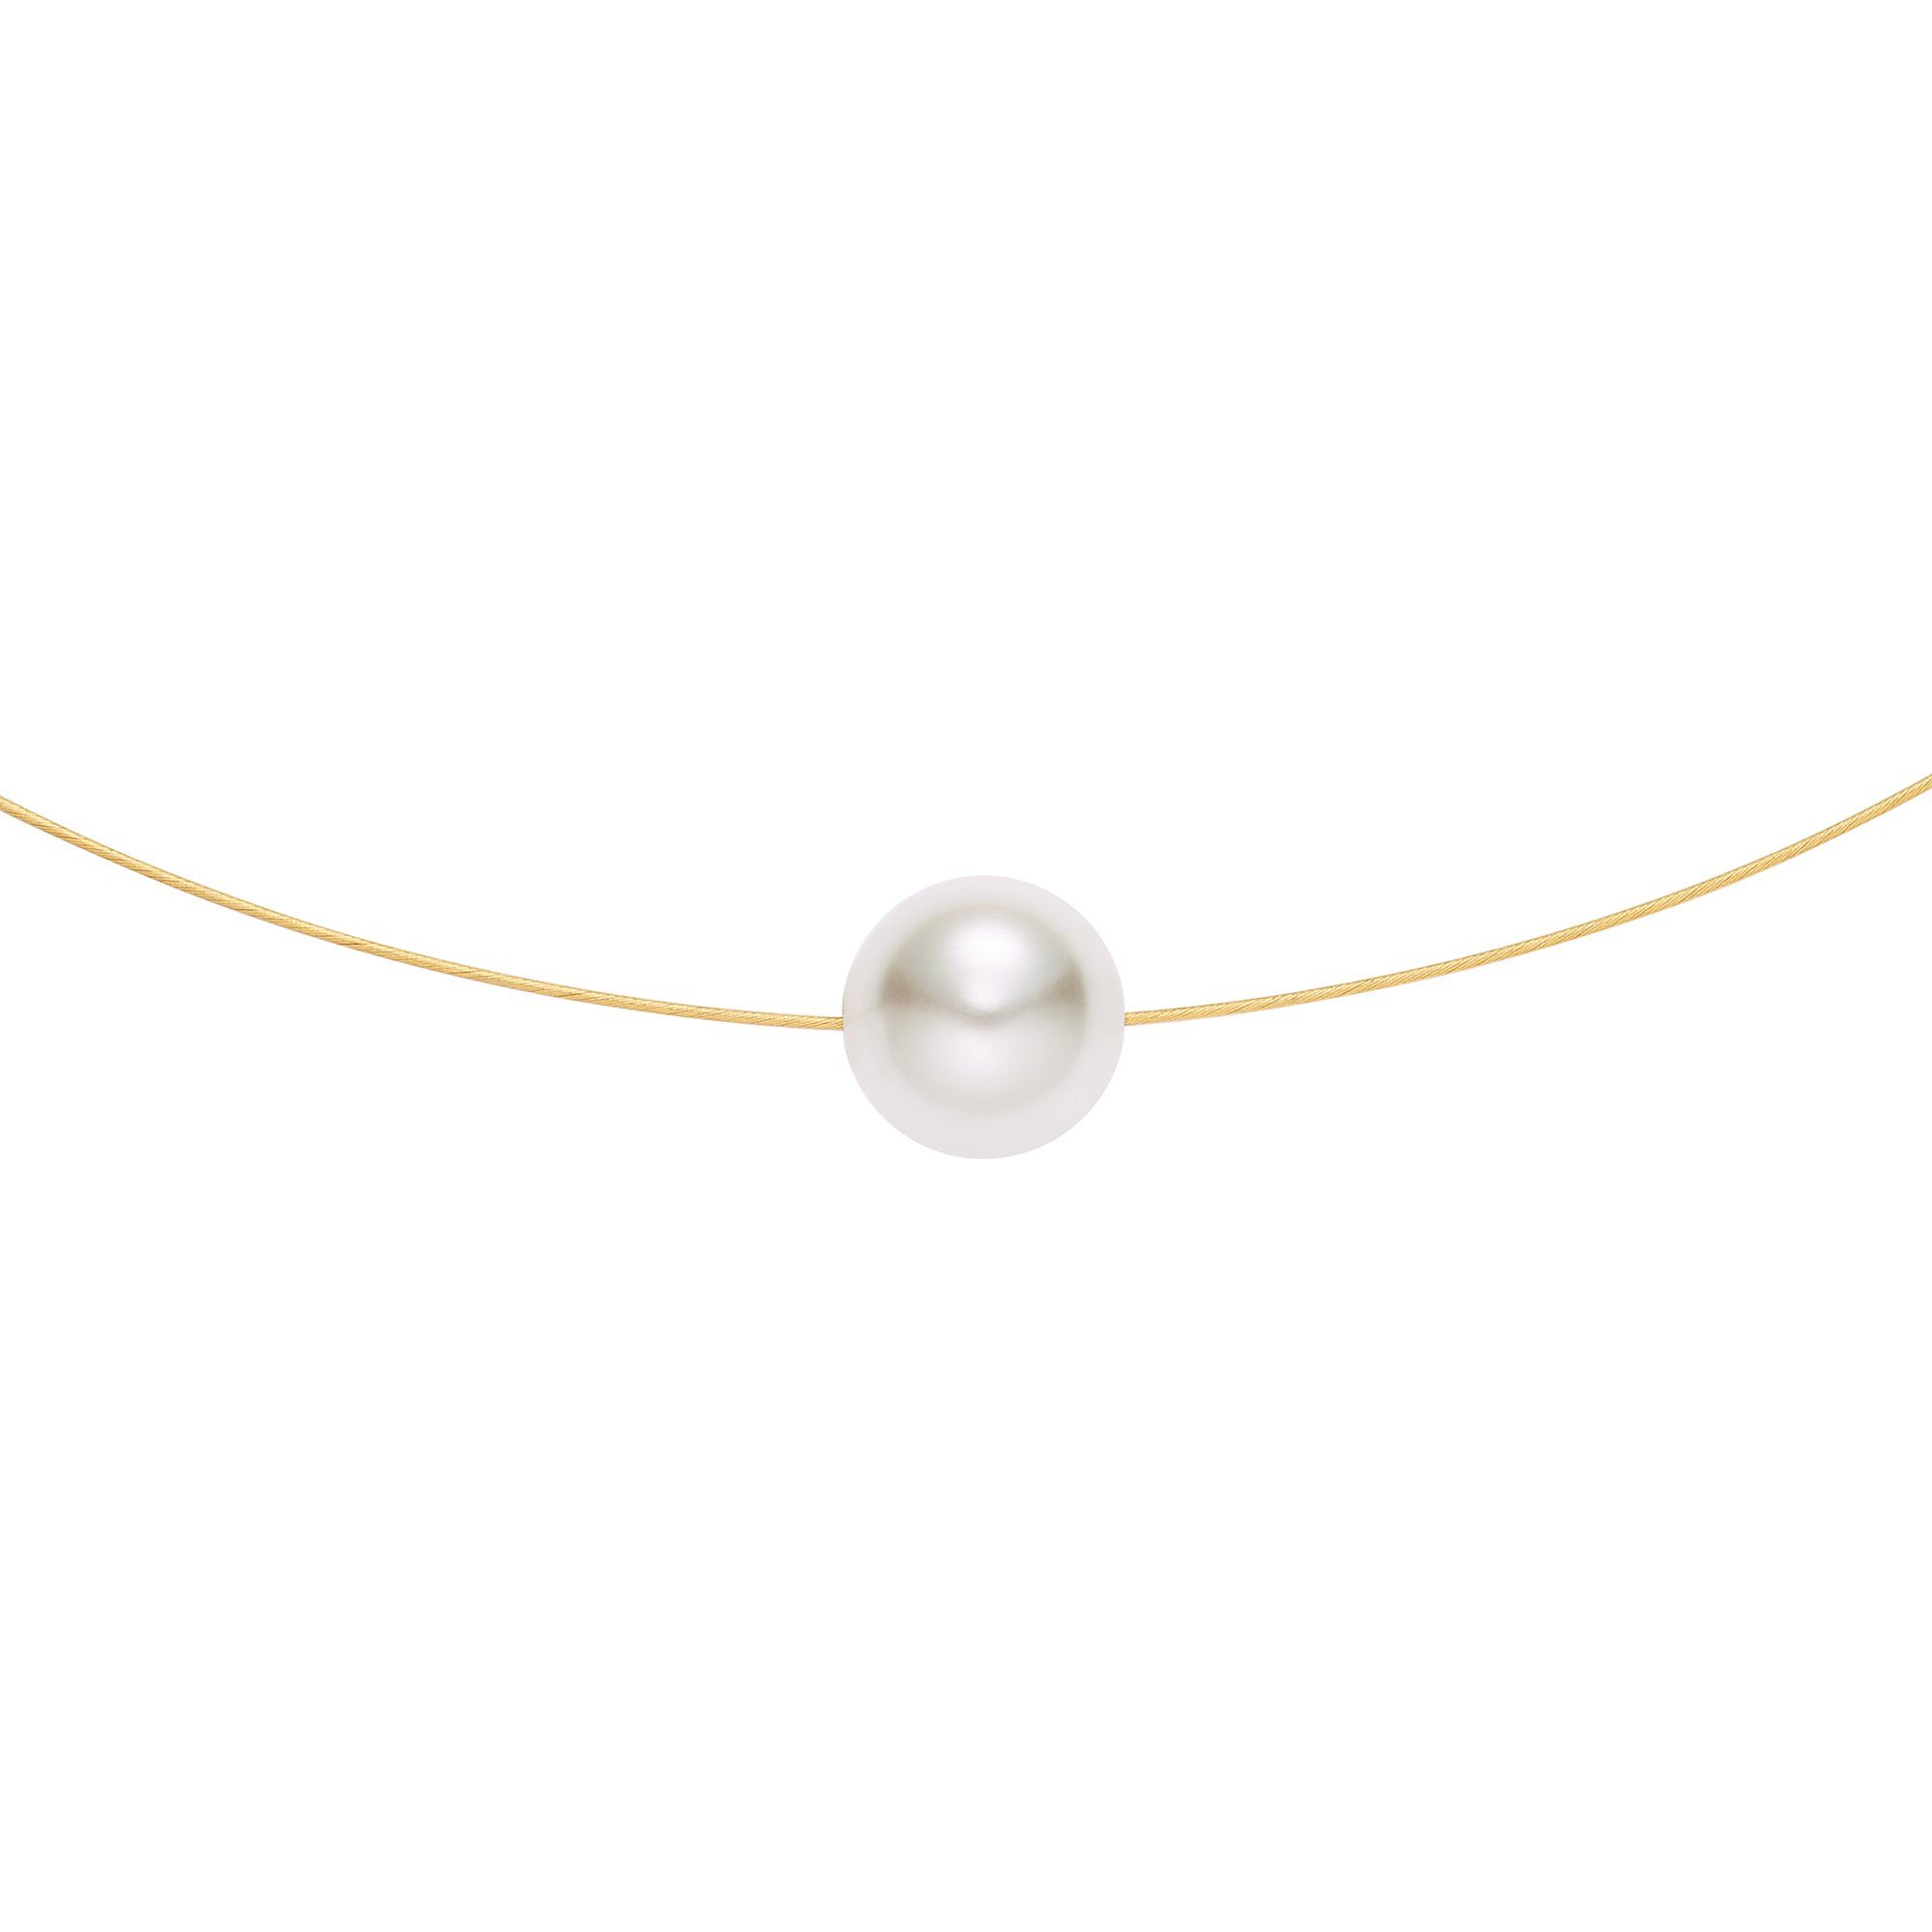 Heideman Collier Perlenkette goldfarbend (inkl. Geschenkverpackung), mit  einer Perle